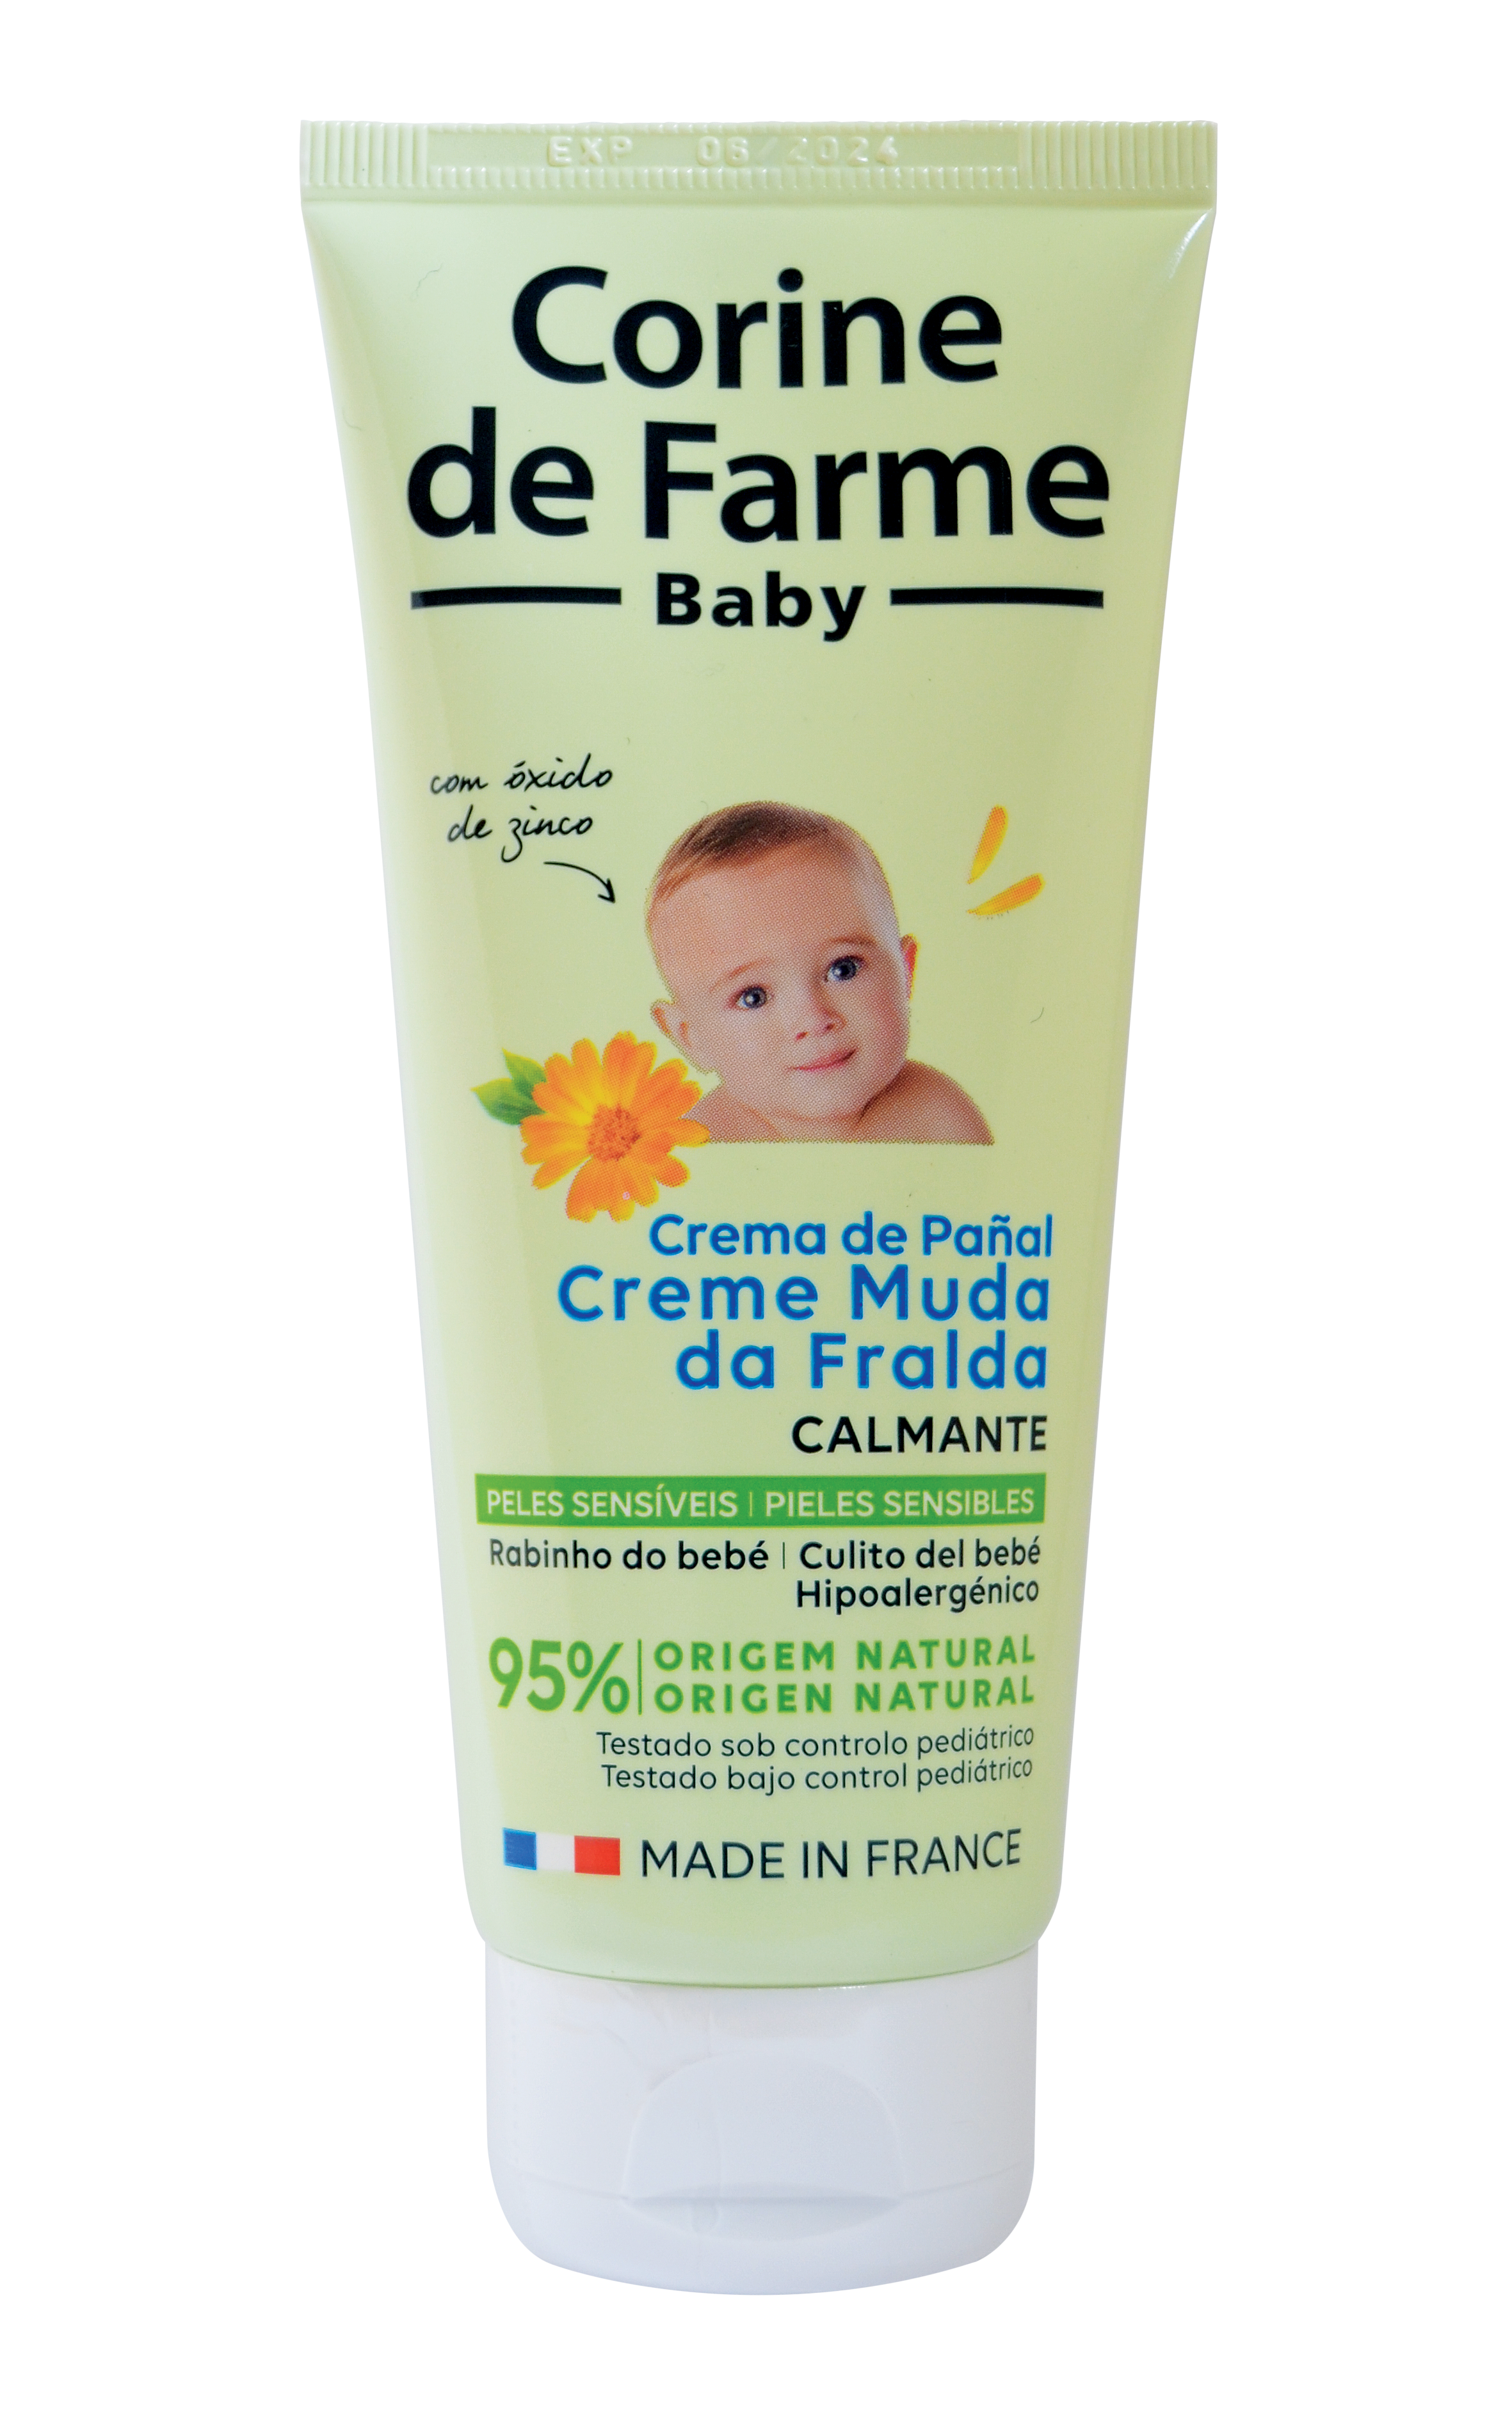 Crema de Pañal Calmante cheap - Corine de Farme